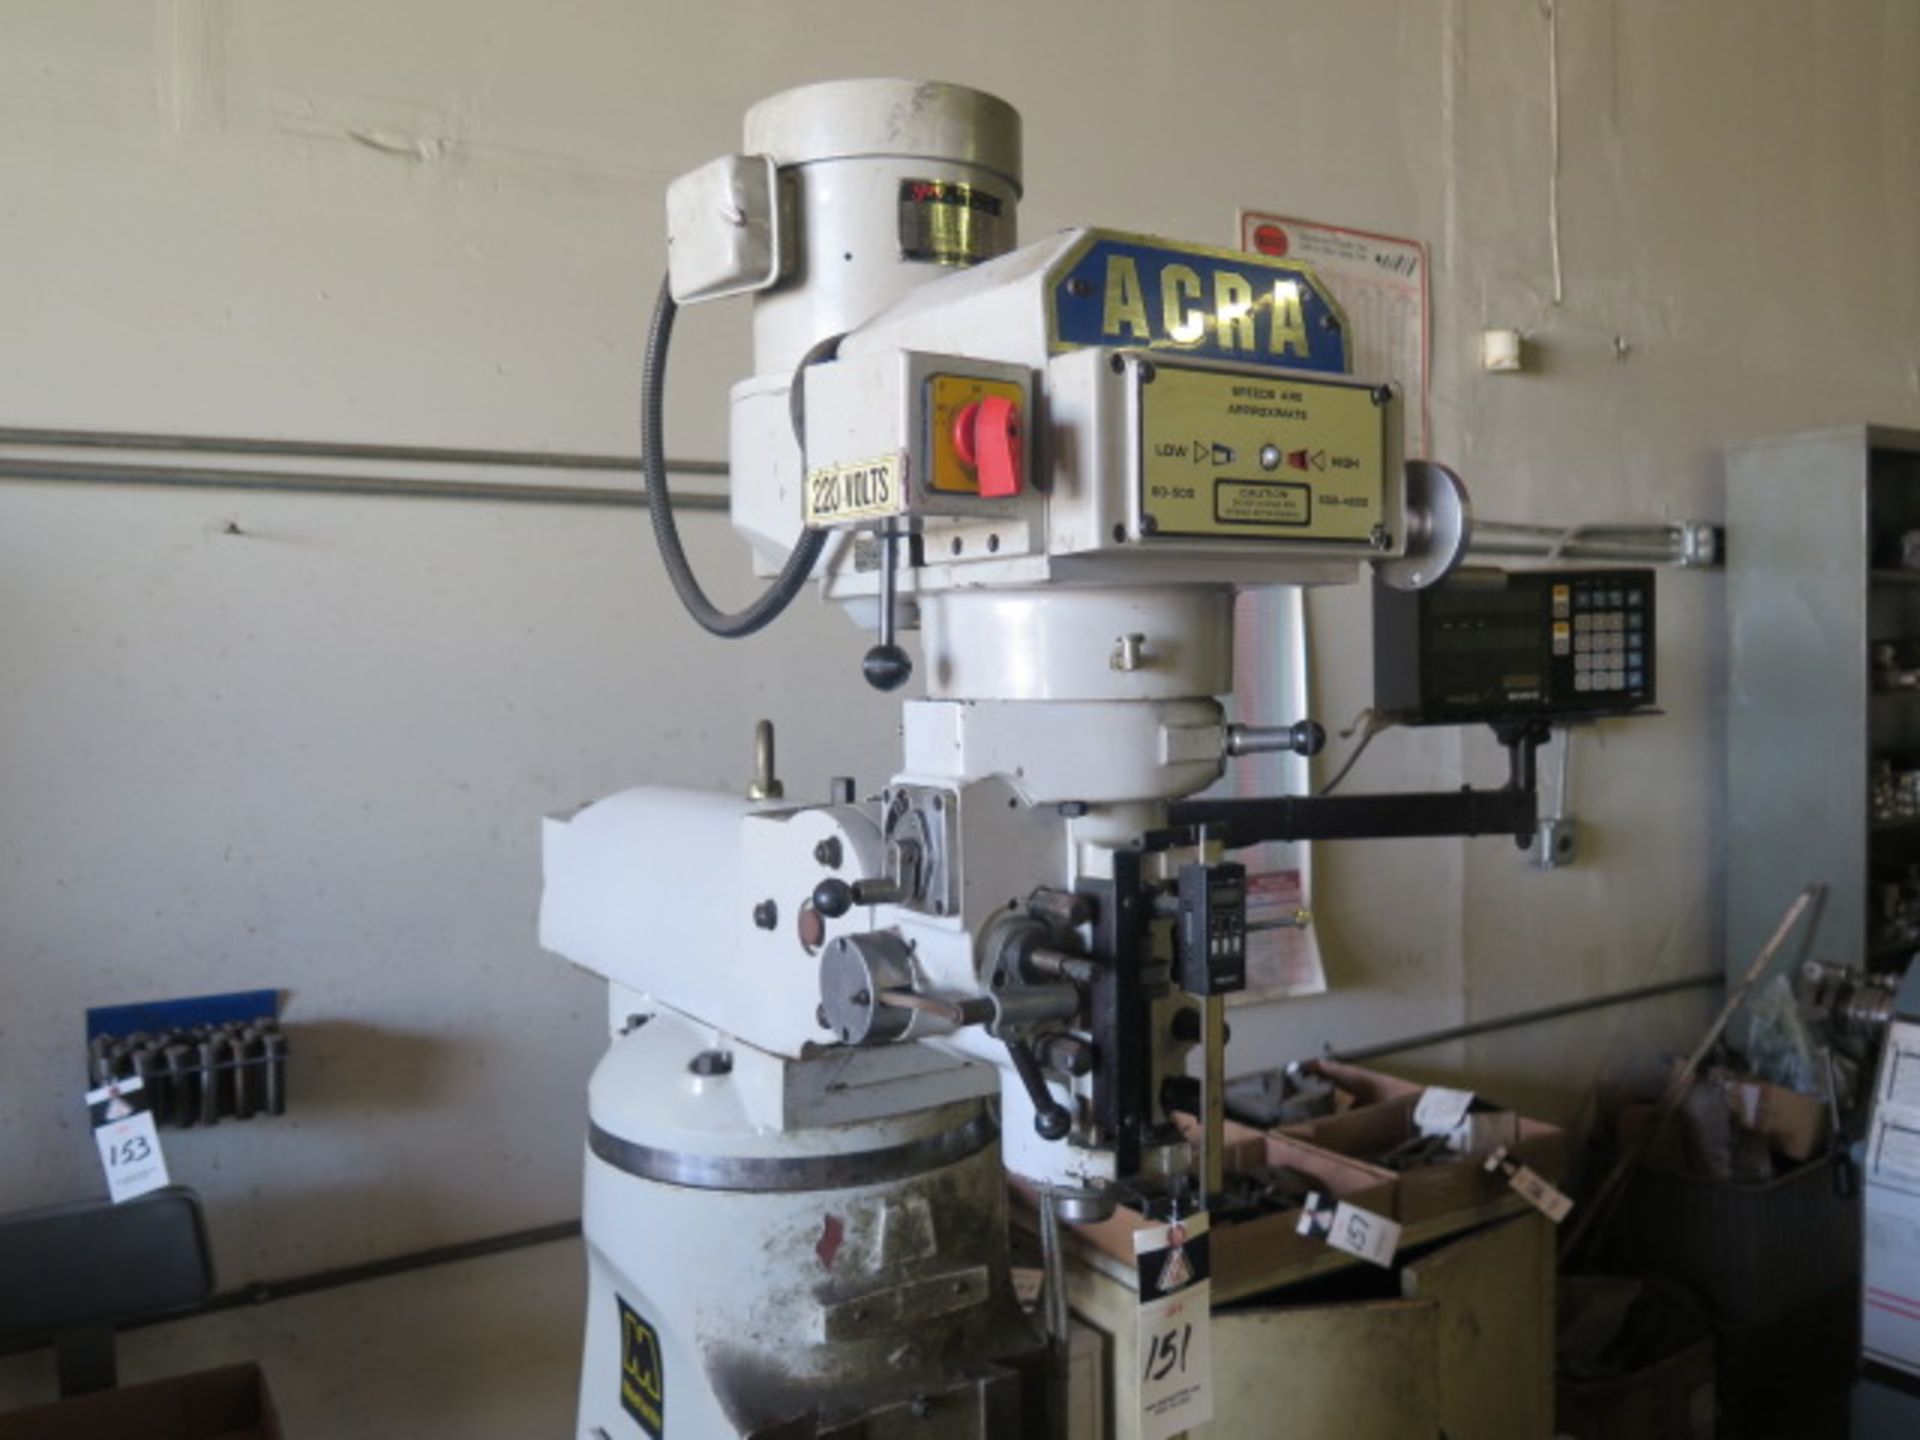 Acra AM-2V Vertical Mill s/n 970084 w/ Sony Millman DRO, Mitutoyo Digital “Z” Scale, 3Hp Motor, 60- - Image 2 of 8